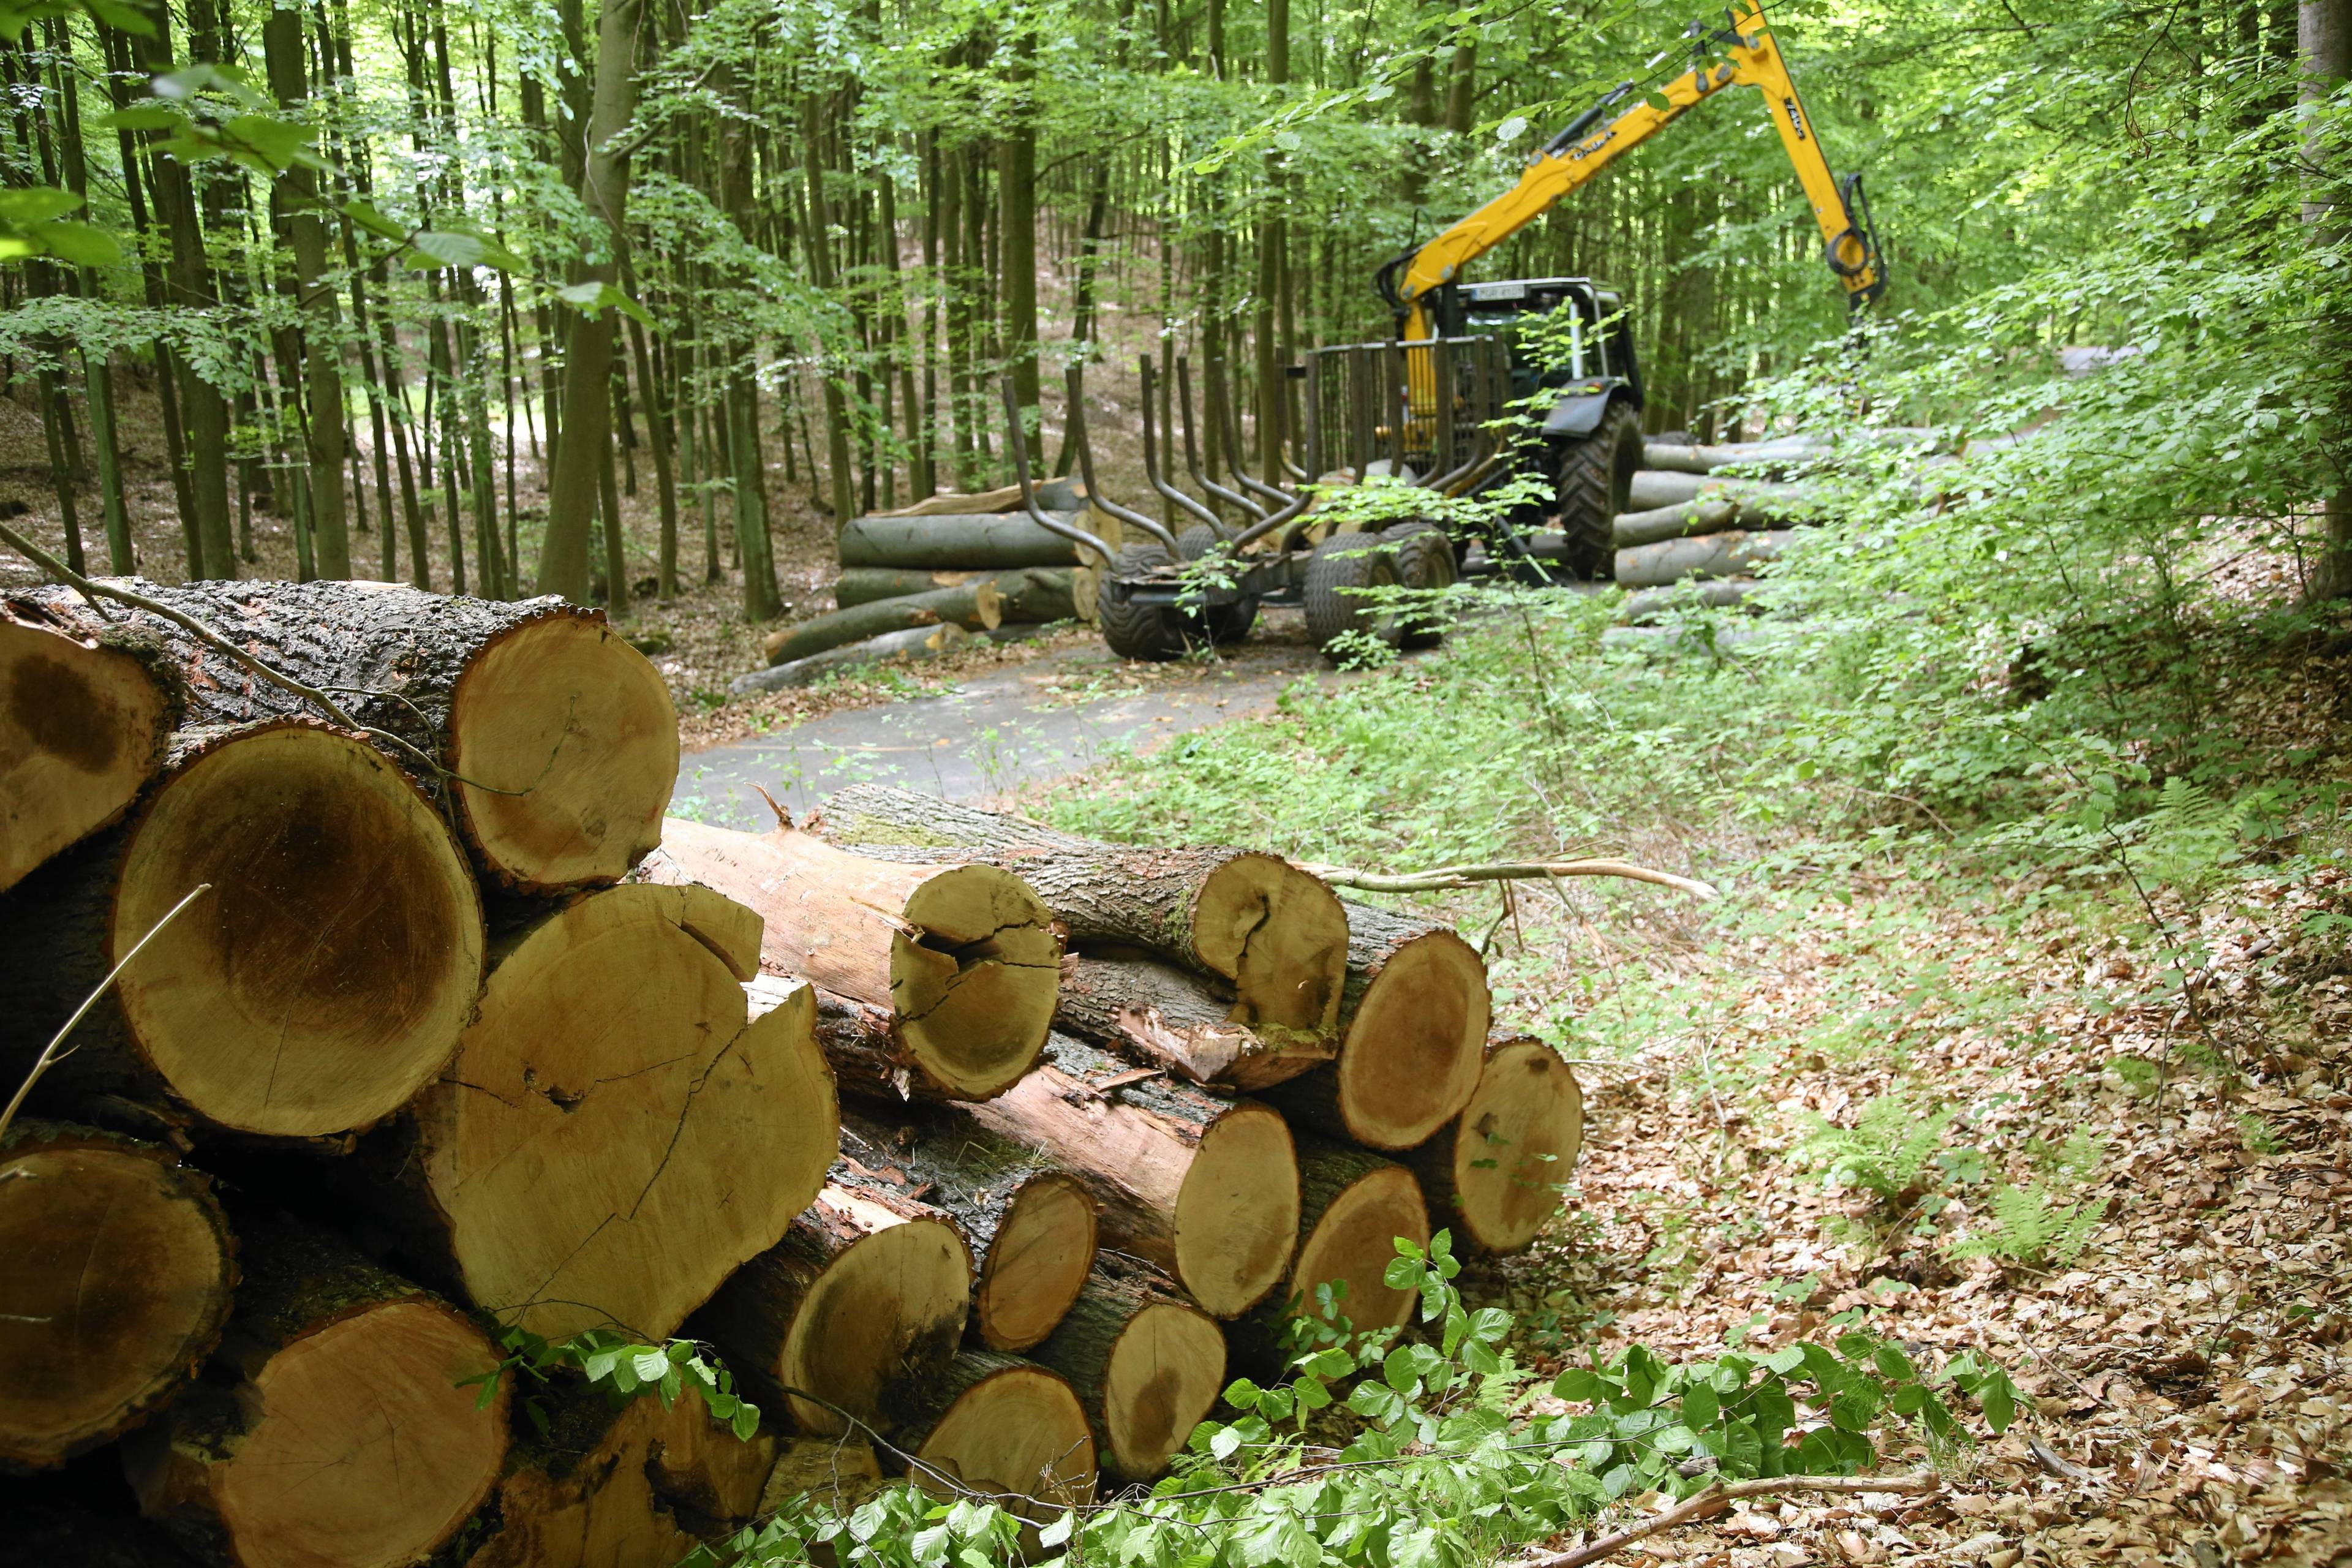 Ścięte drzewa w lesie, w głebi - żółta maszyna do wycinki